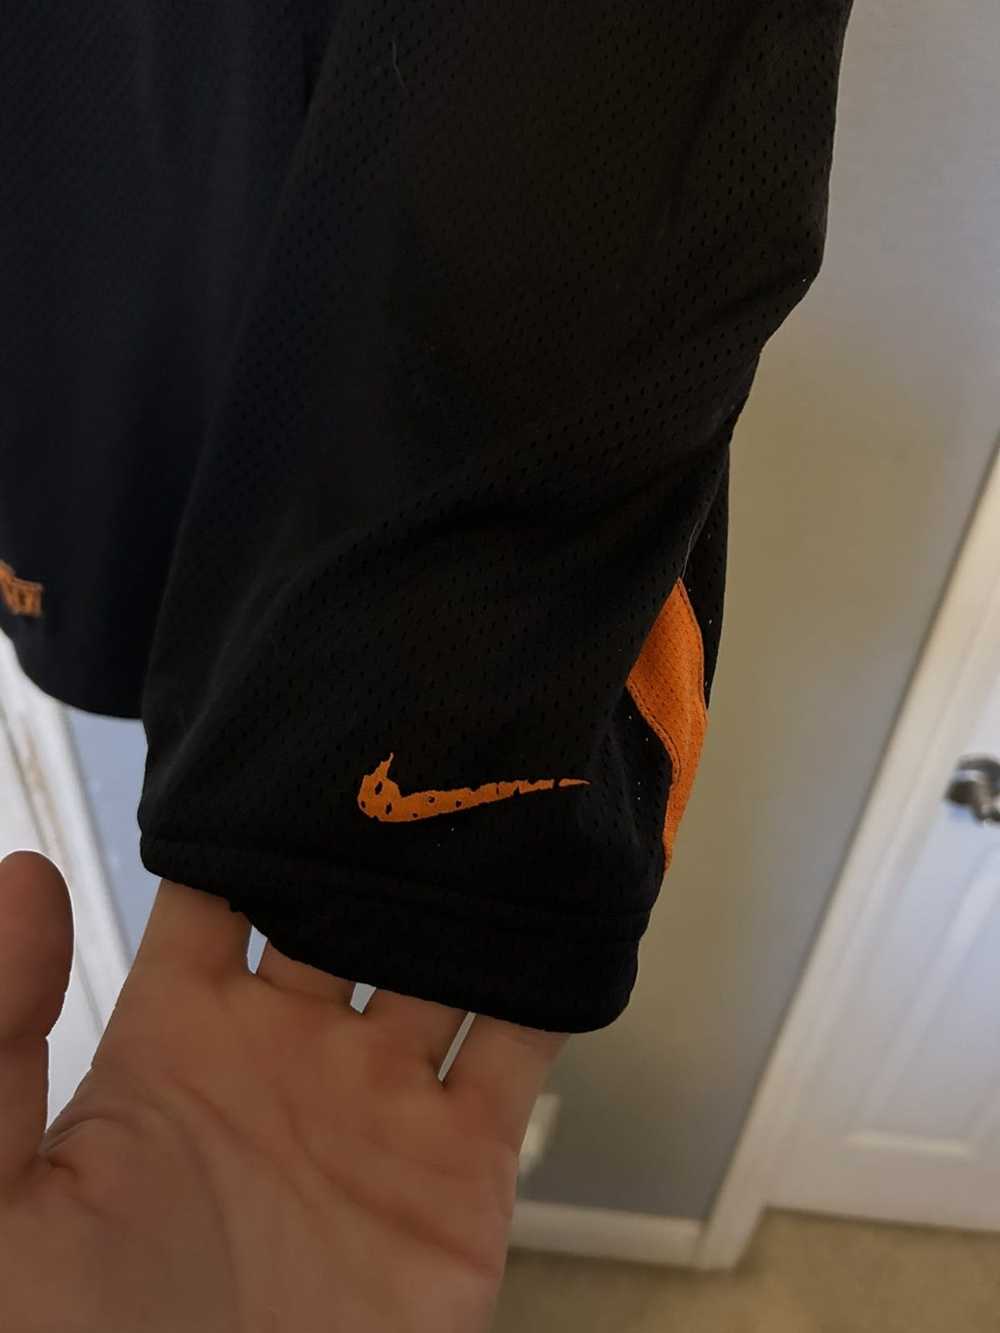 Nike Nike shorts Oklahoma State - image 3